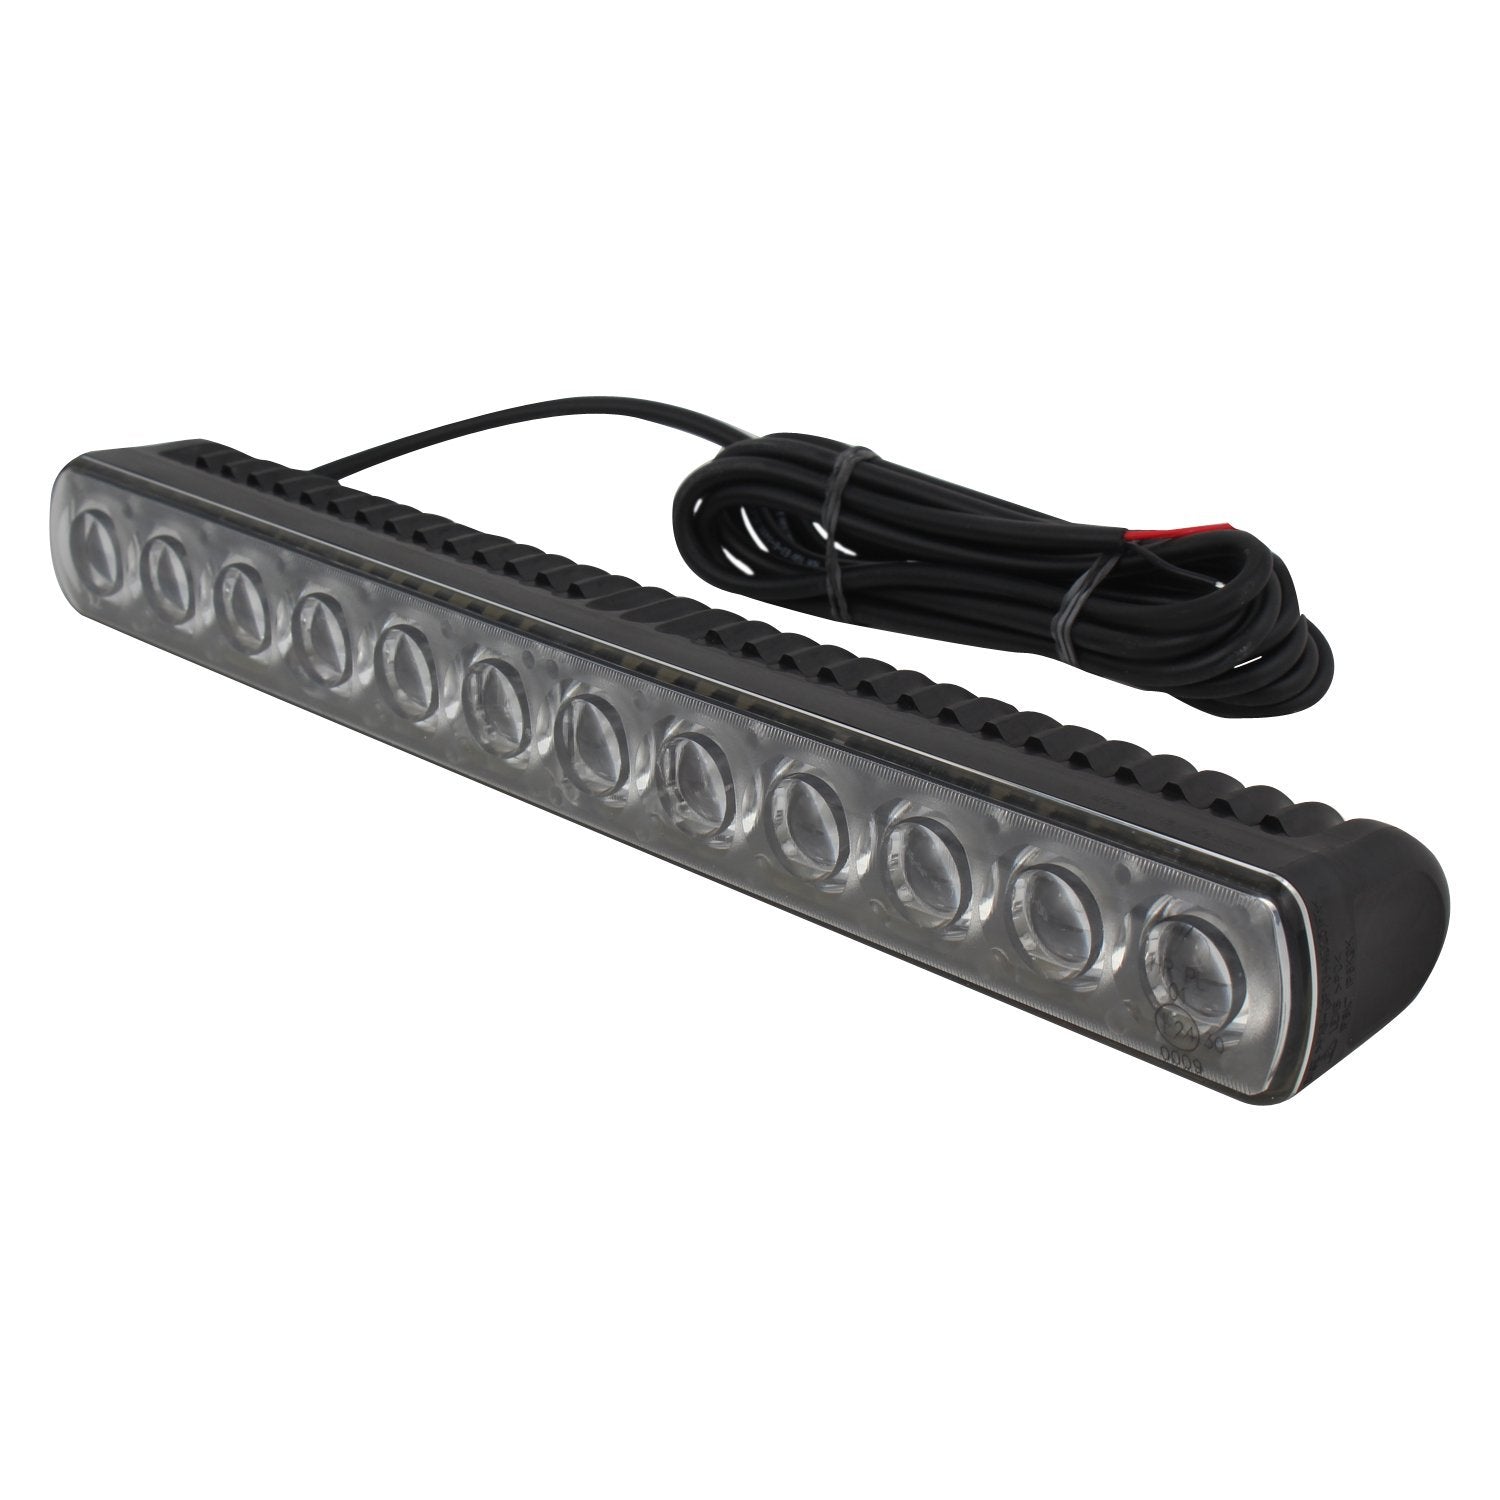 Hella LED Light Bars - High Beam Universal Fog Lamp (9-33V,25W,White Light)